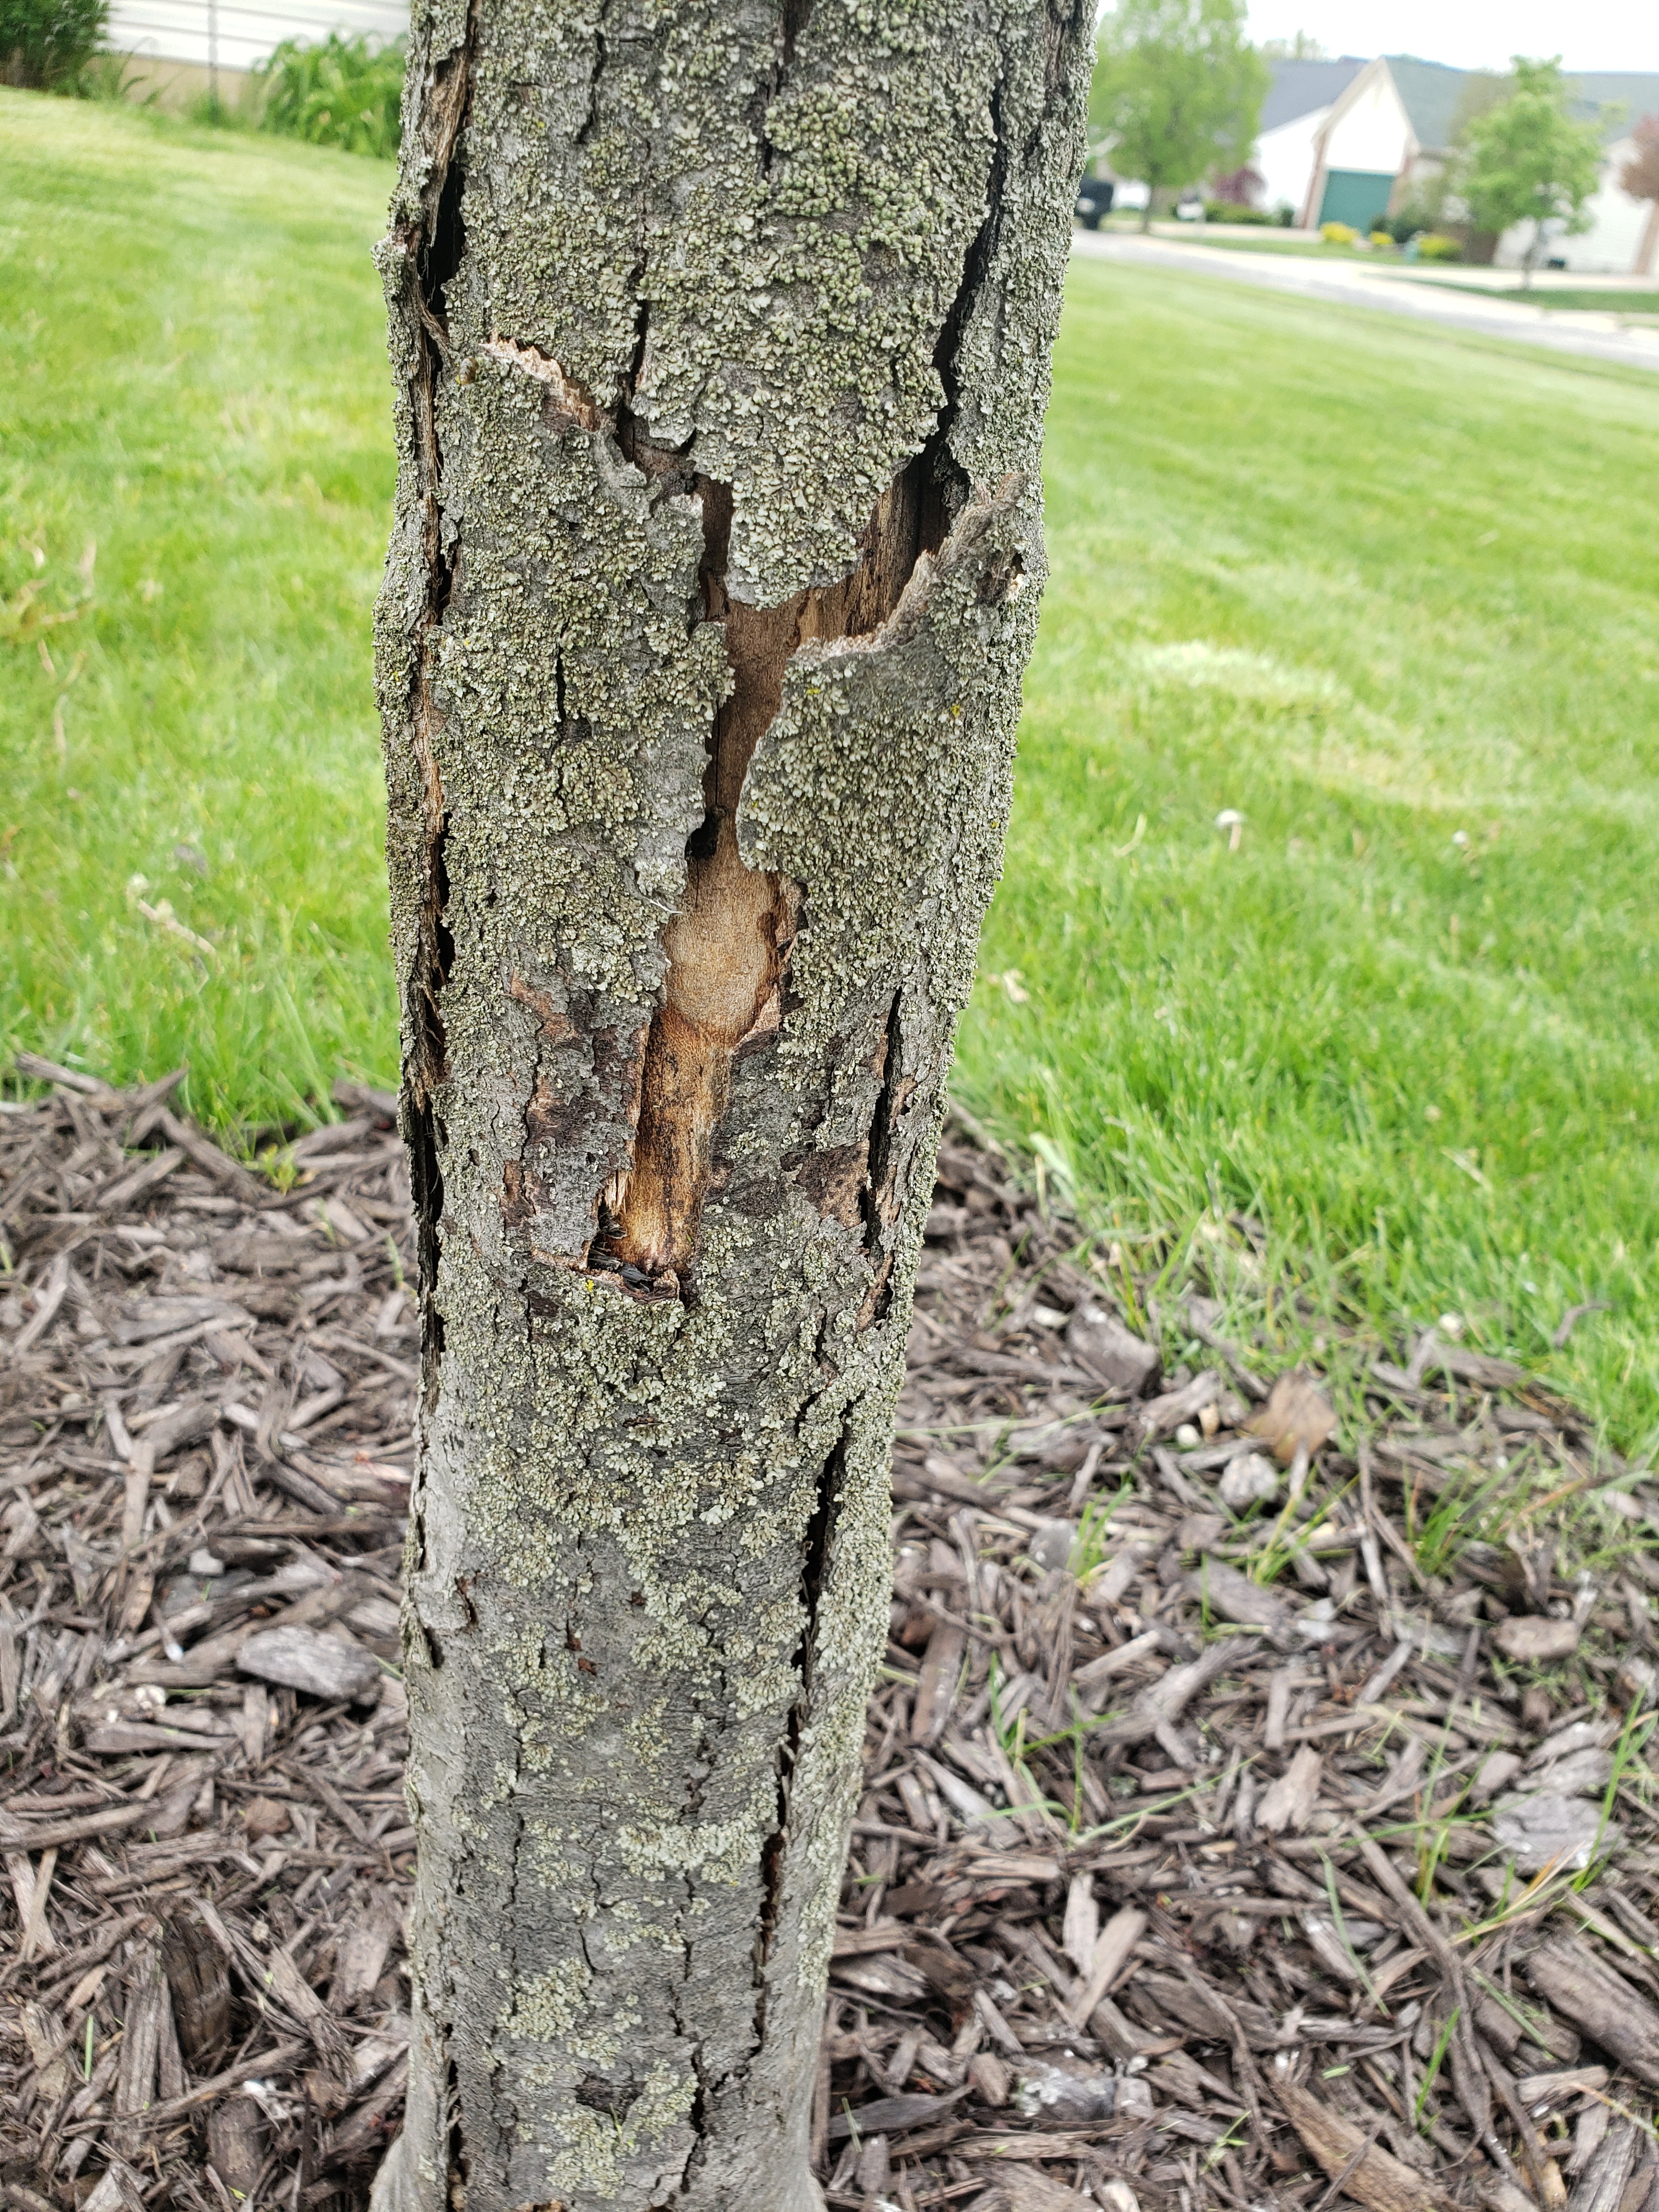 Peeling Tree Bark - Why Is Bark Peeling Off My Tree